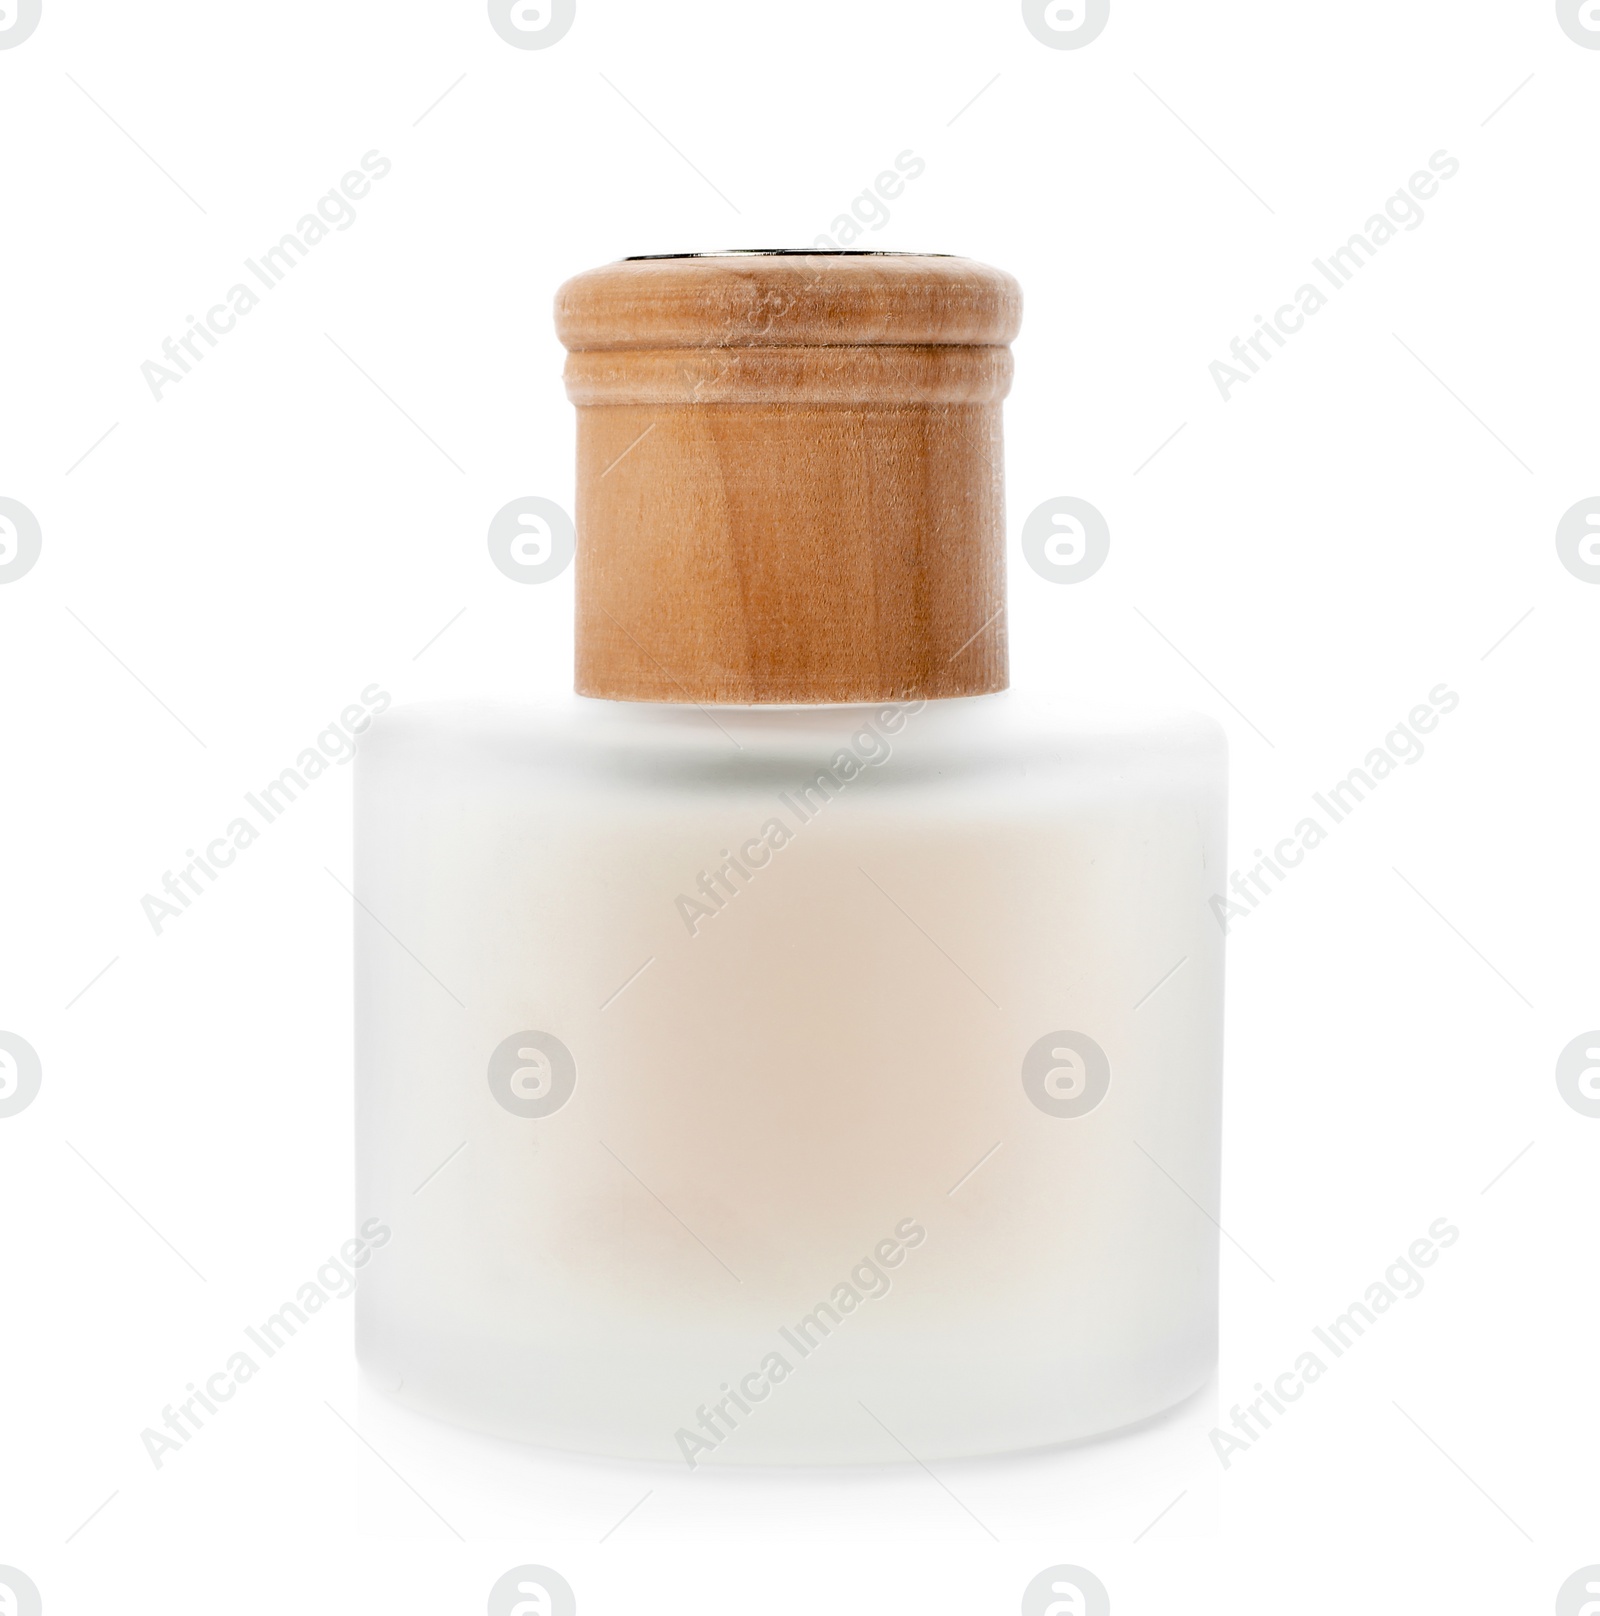 Photo of Aromatic reed freshener on white background